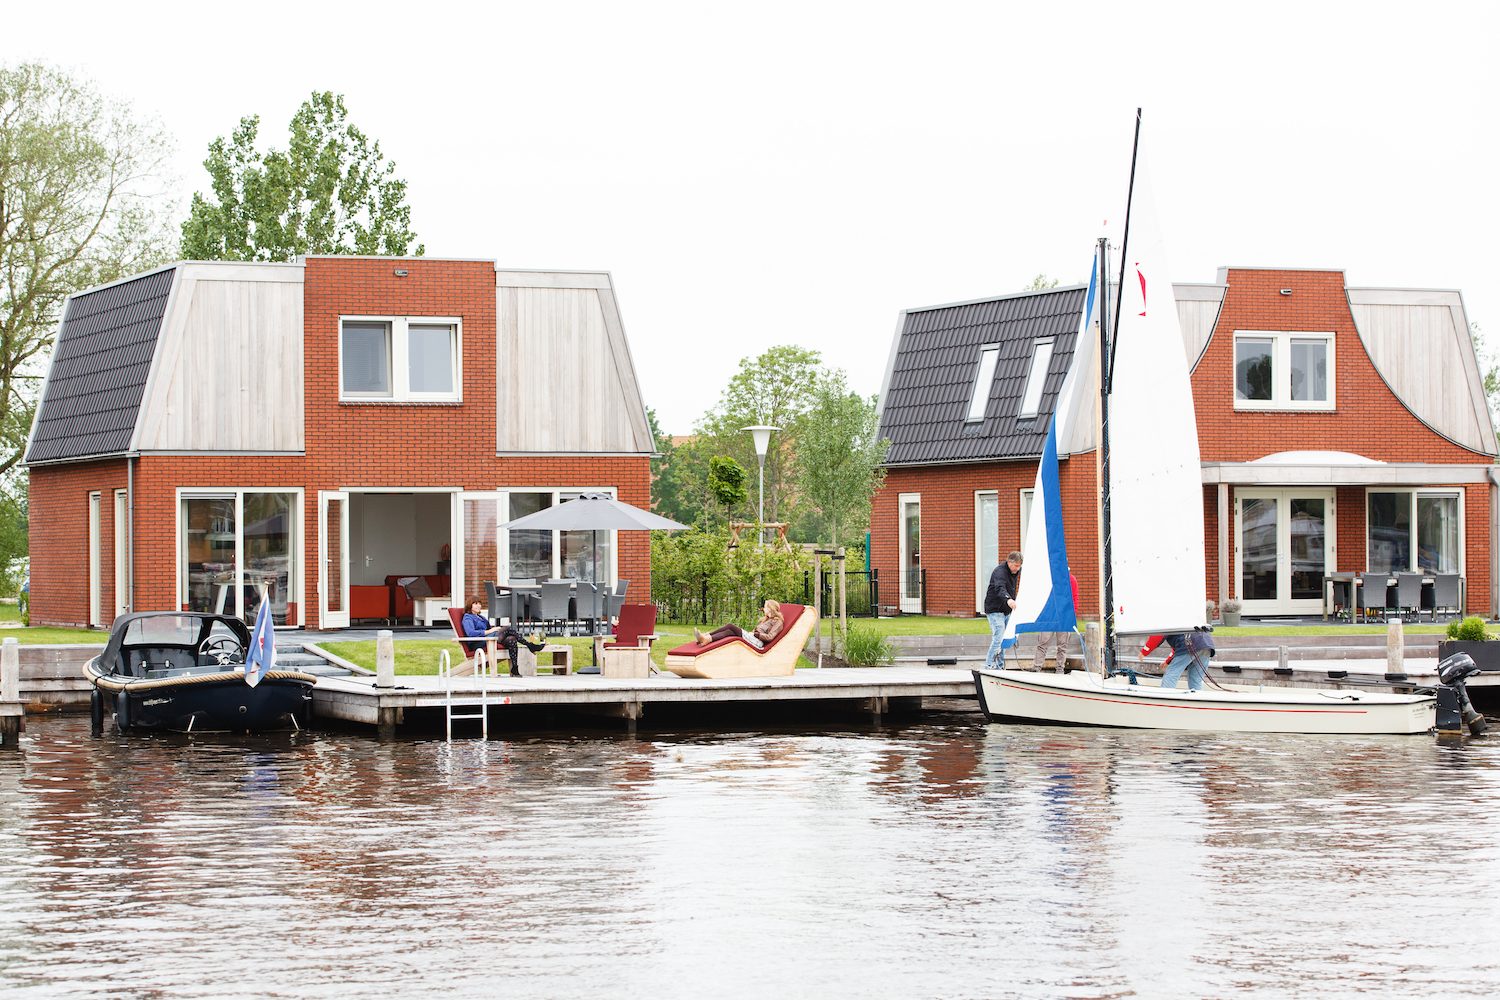 Ferienhaus in Friesland kaufen